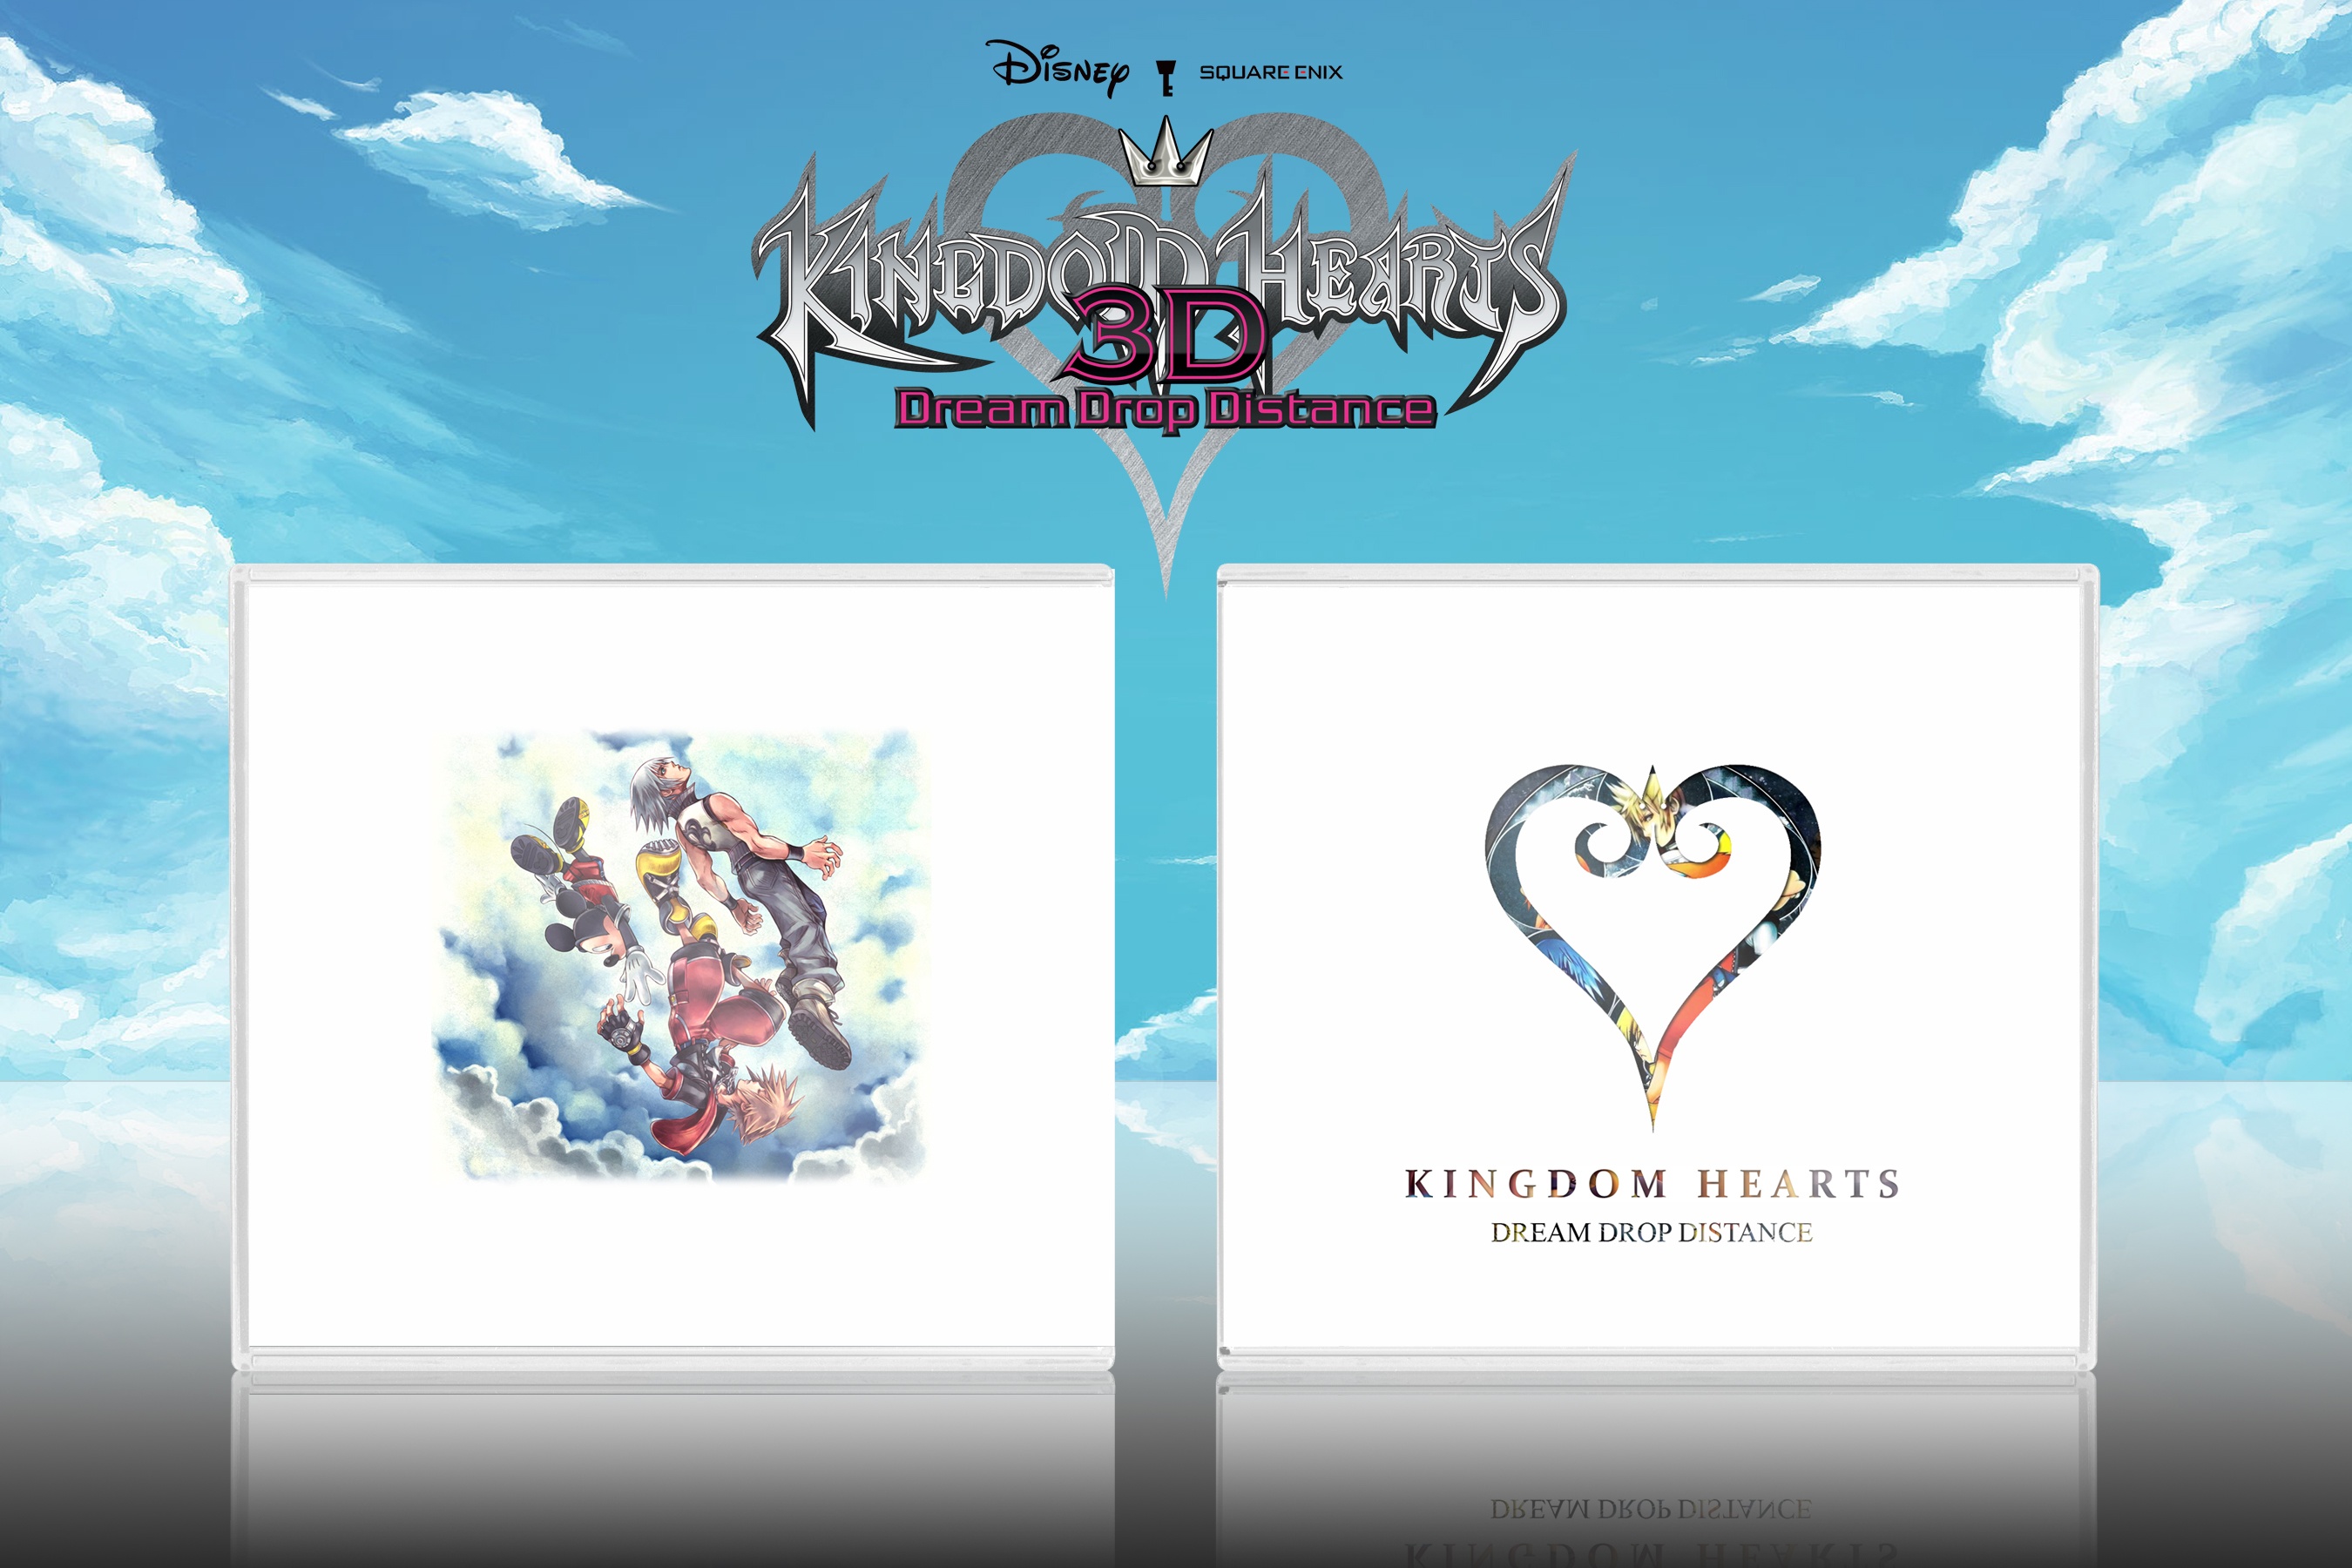 Kingdom Hearts Dream Drop Distance box cover